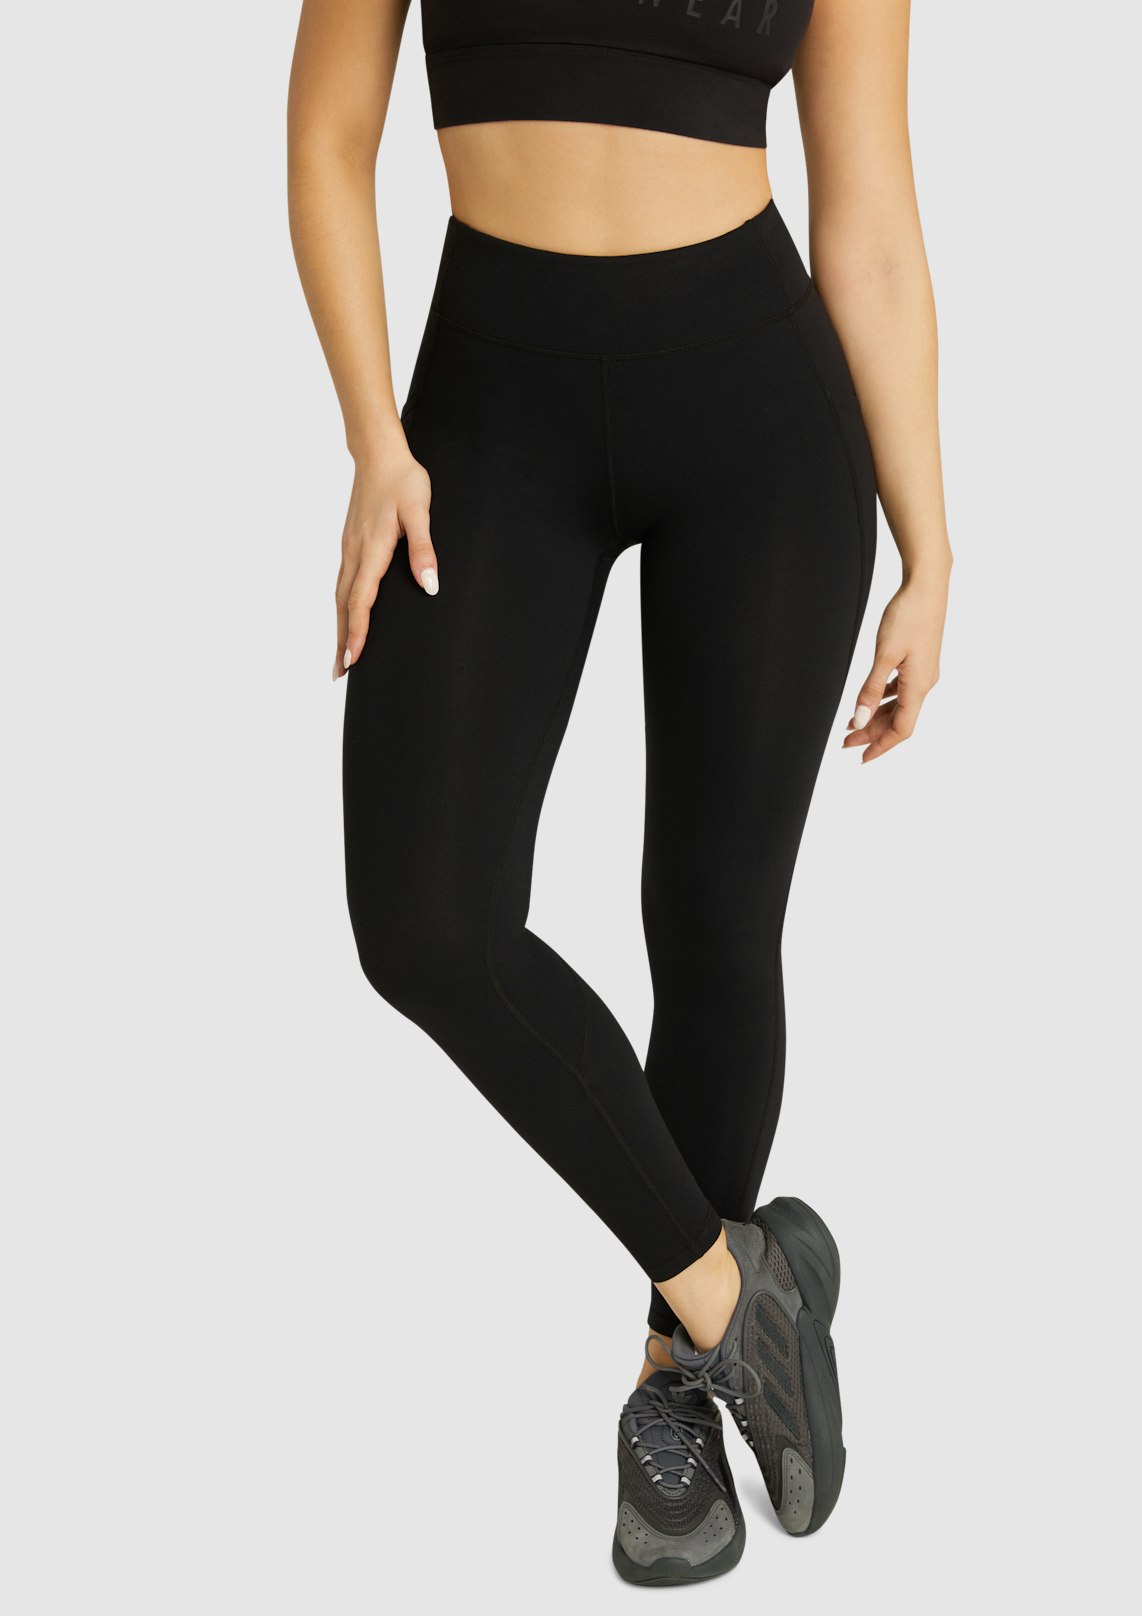 Black Luxesoft Pocket Full Length Tights, Women's Bottom